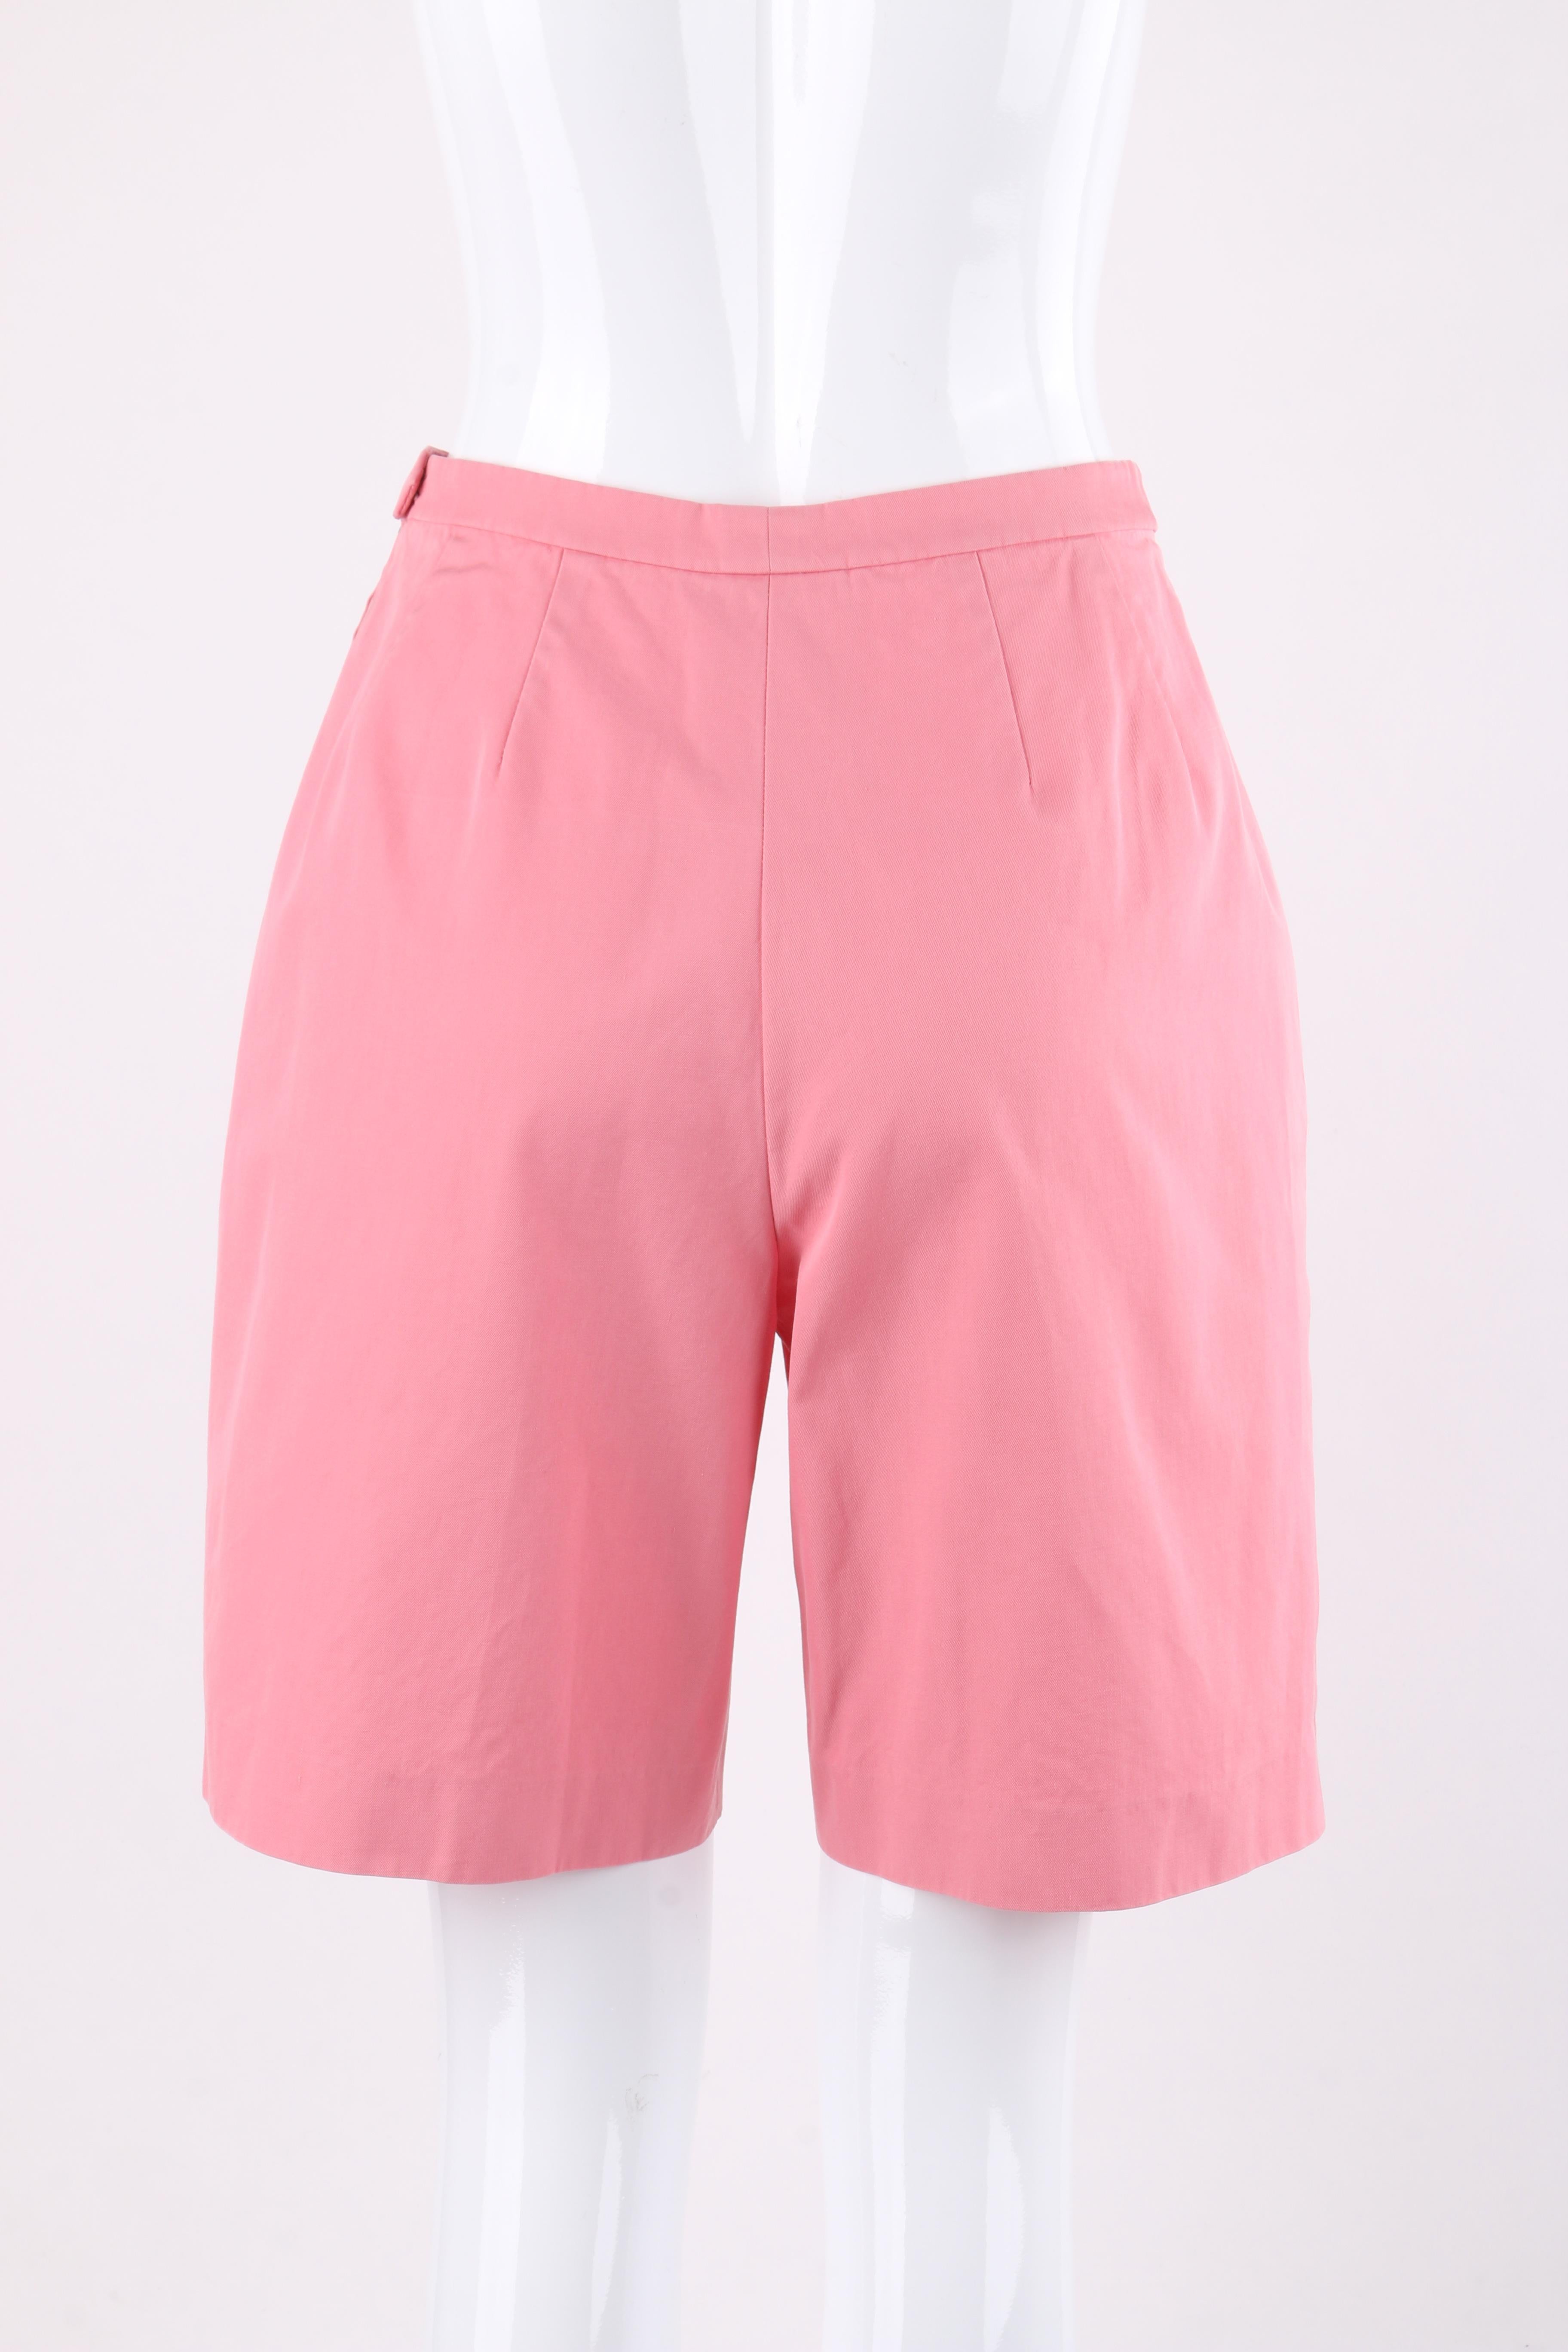 EMILIO PUCCI c.1960’s 2 Pc Pink Multi-color Tribal Button Front Shirt Shorts Set For Sale 1